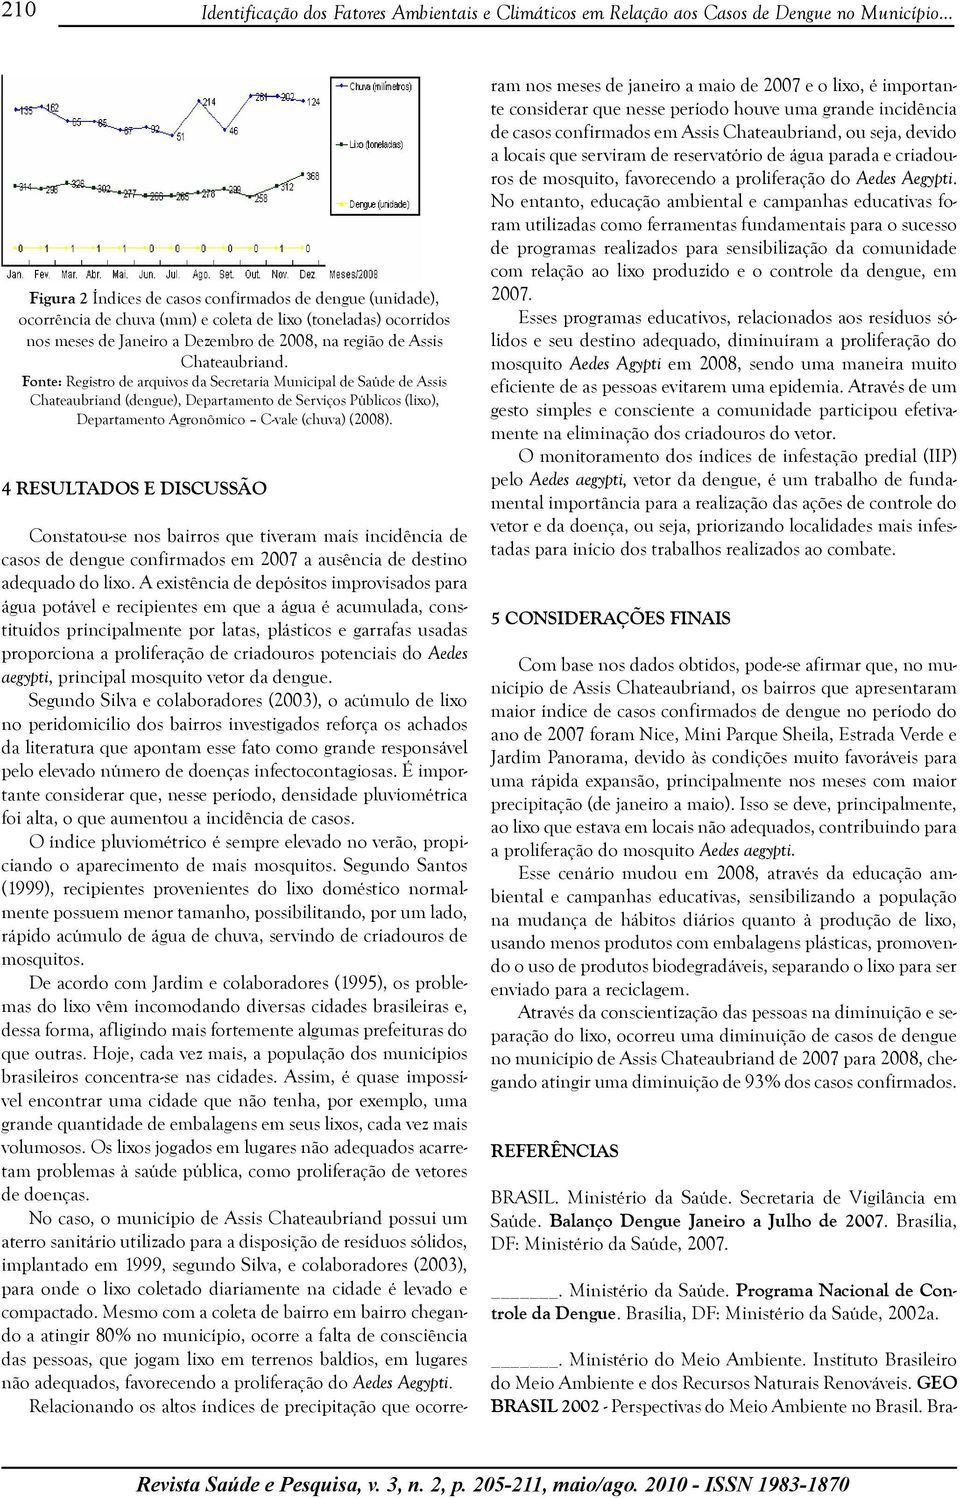 Fonte: Registro de arquivos da Secretaria Municipal de Saúde de Assis Chateaubriand (dengue), Departamento de Serviços Públicos (lixo), Departamento Agronômico C-vale (chuva) (2008).